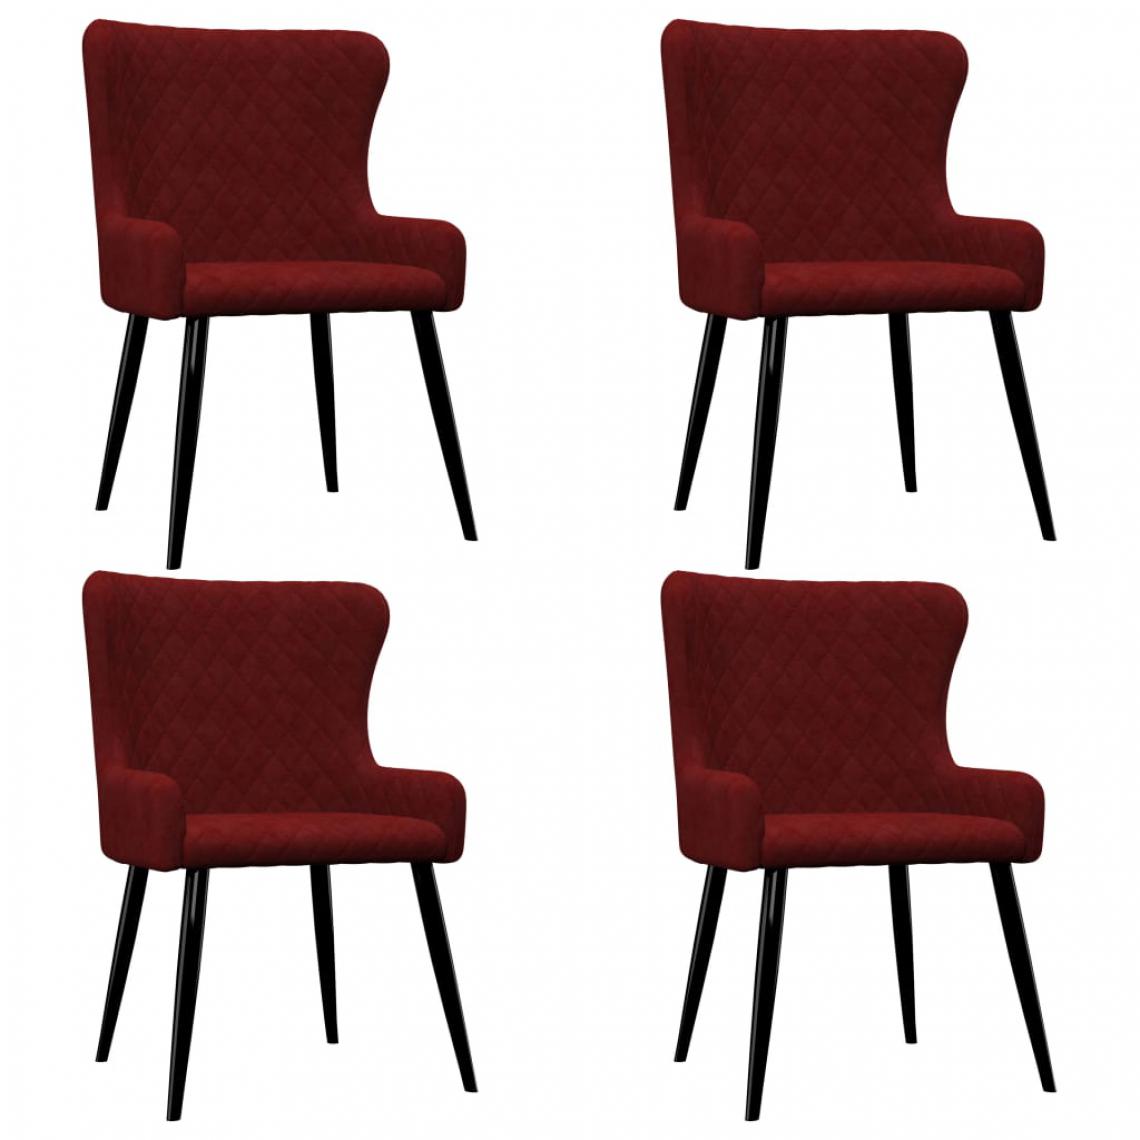 Chunhelife - Chaises de salle à manger 4 pcs Rouge Velours - Chaises